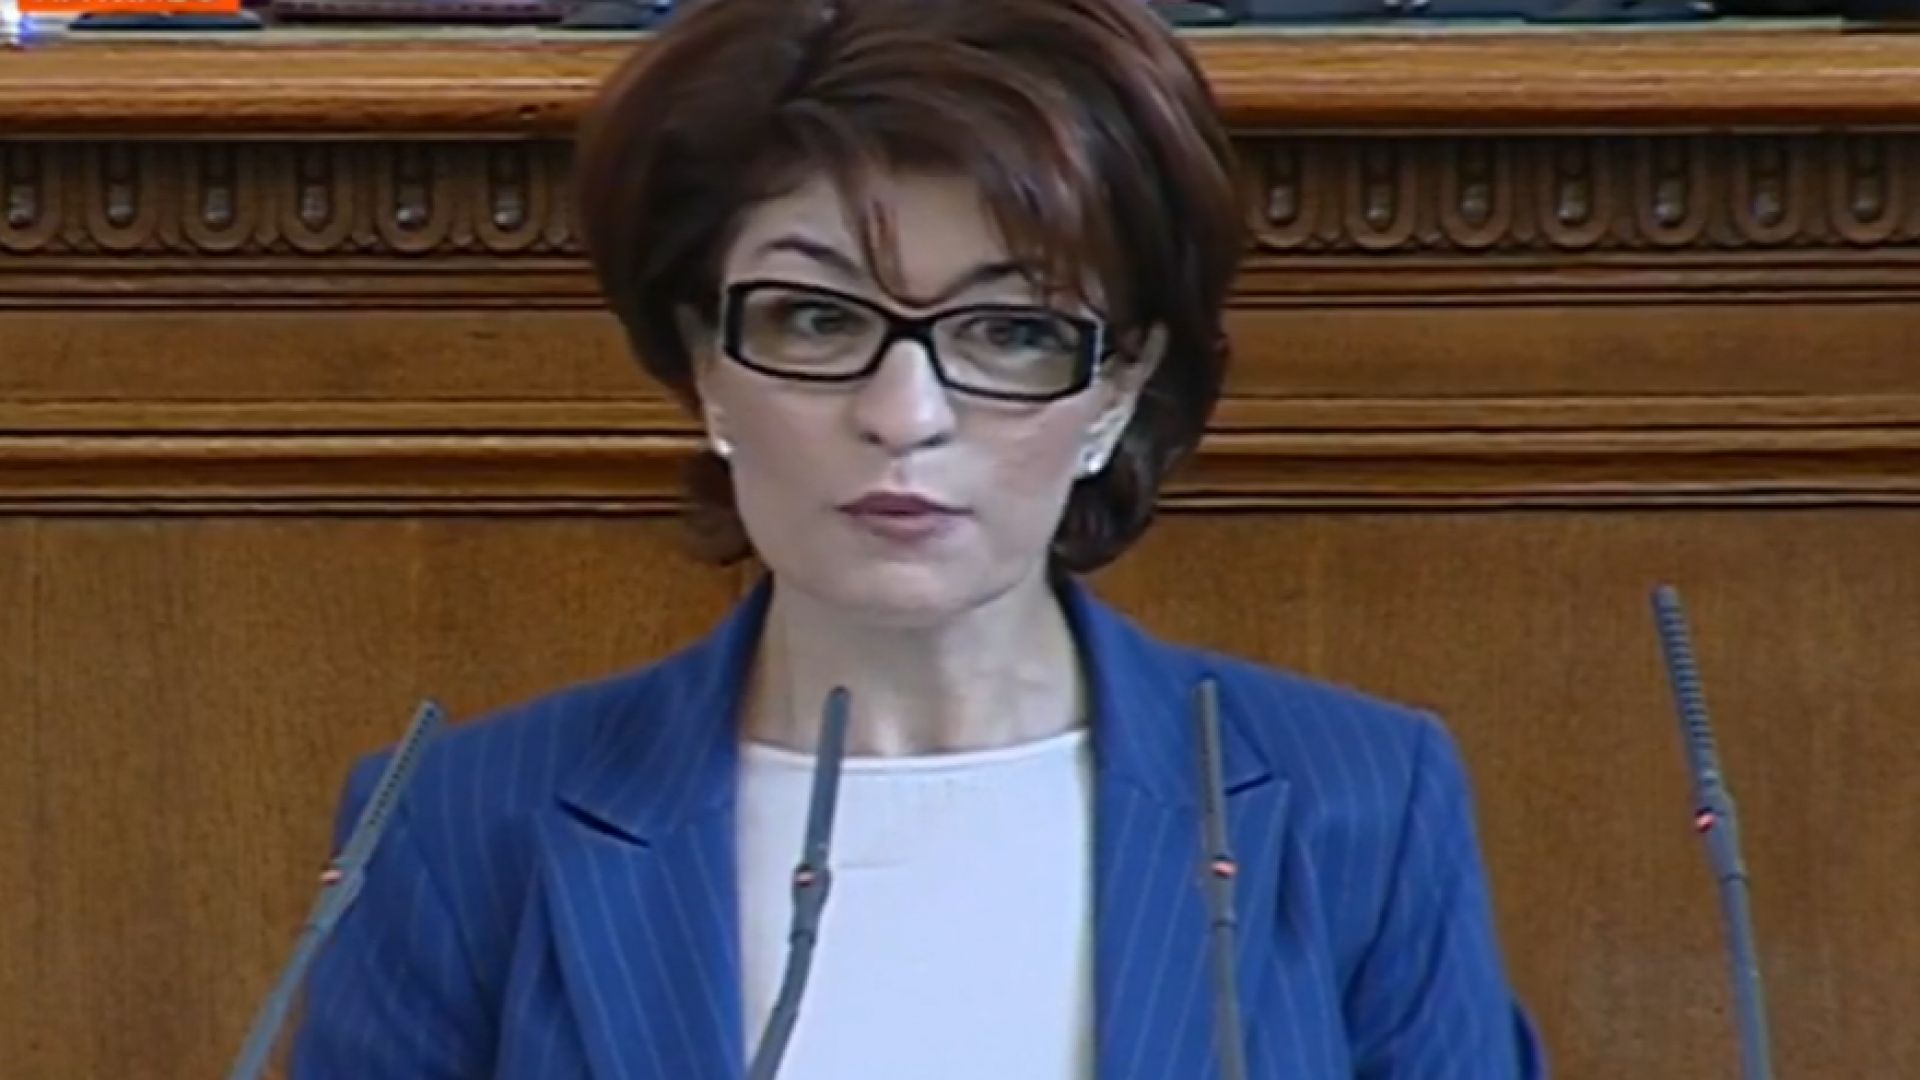 Десислава Атанасова: ГЕРБ-СДС ще върнат мандата за съставяне на правителство, ако го получат